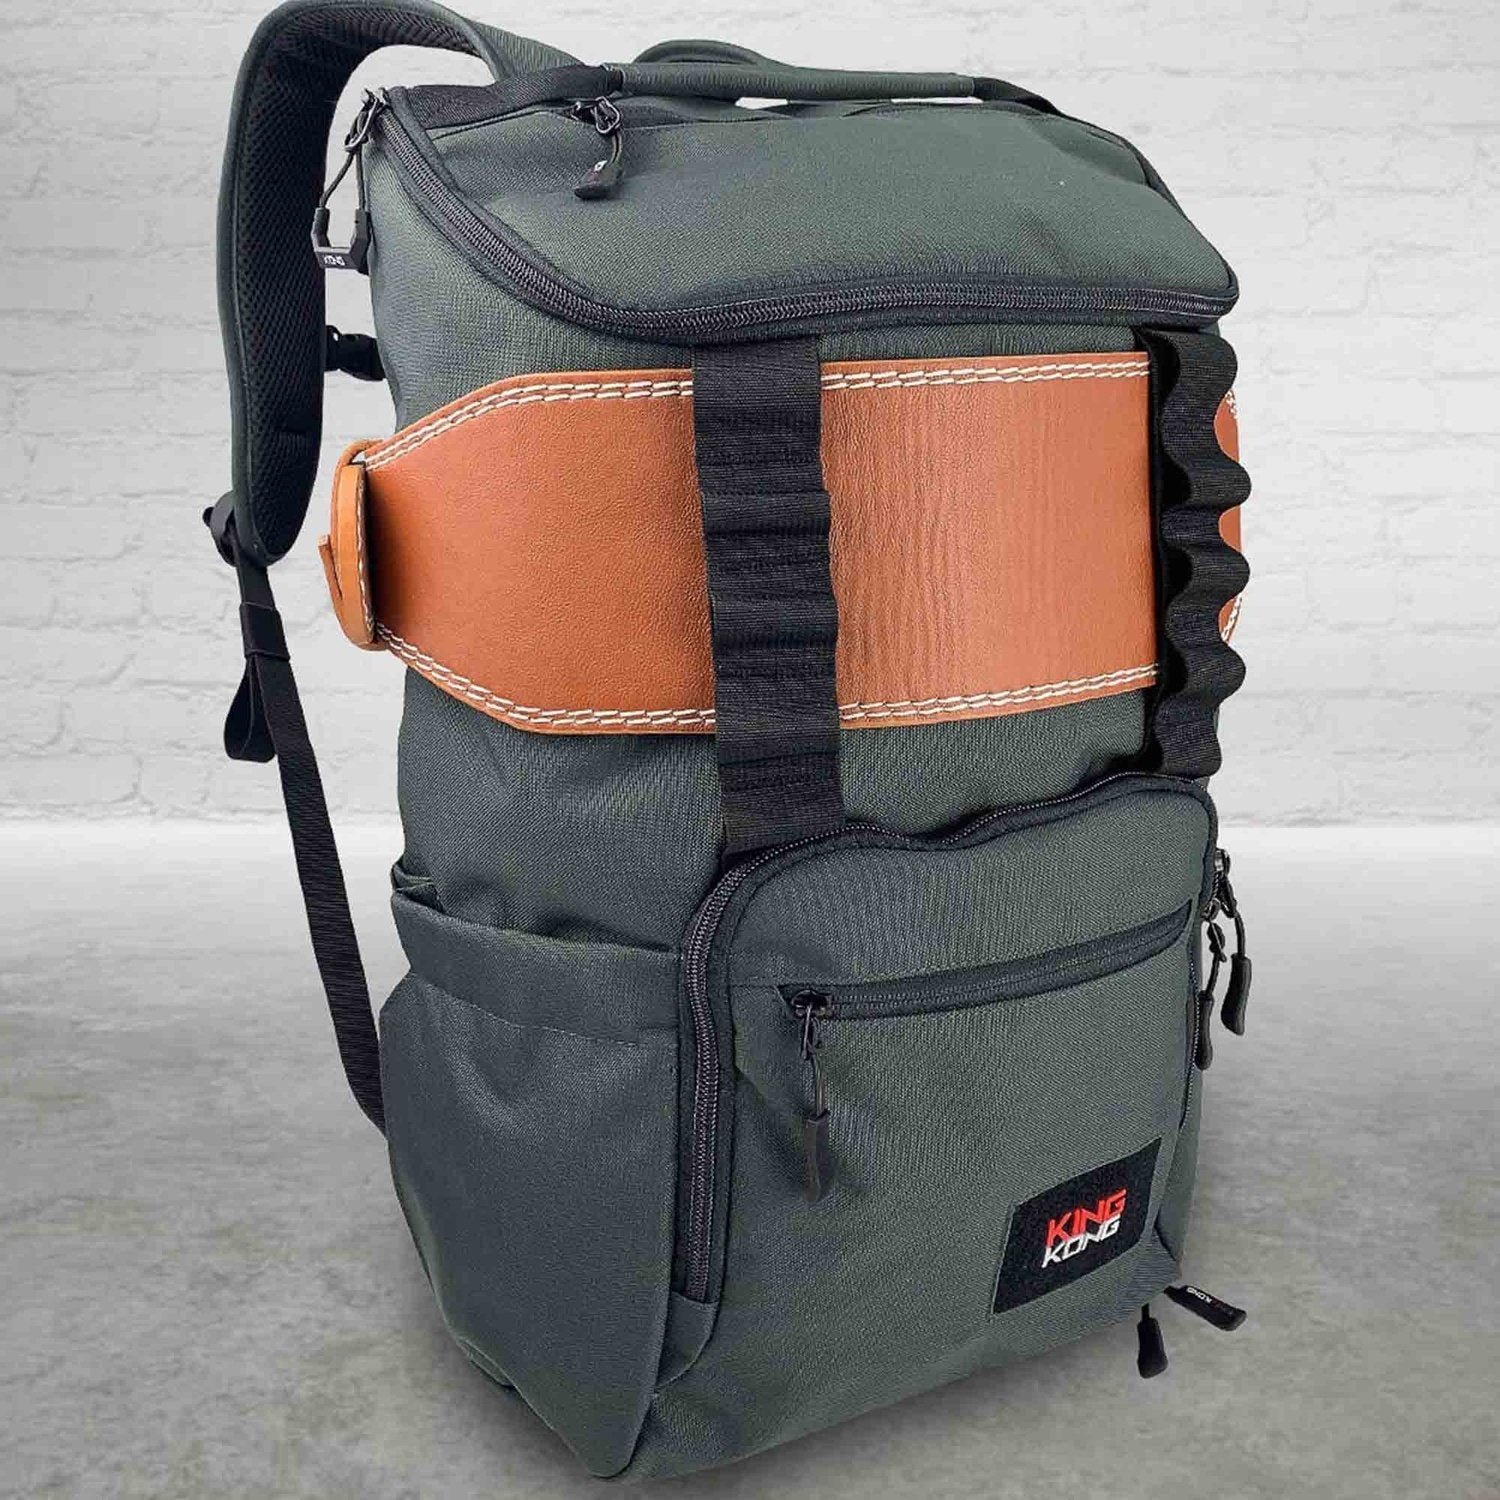 King Kong Bags King Kong CORE Backpack Schwarz 25l kaufen bei HighPowered.ch